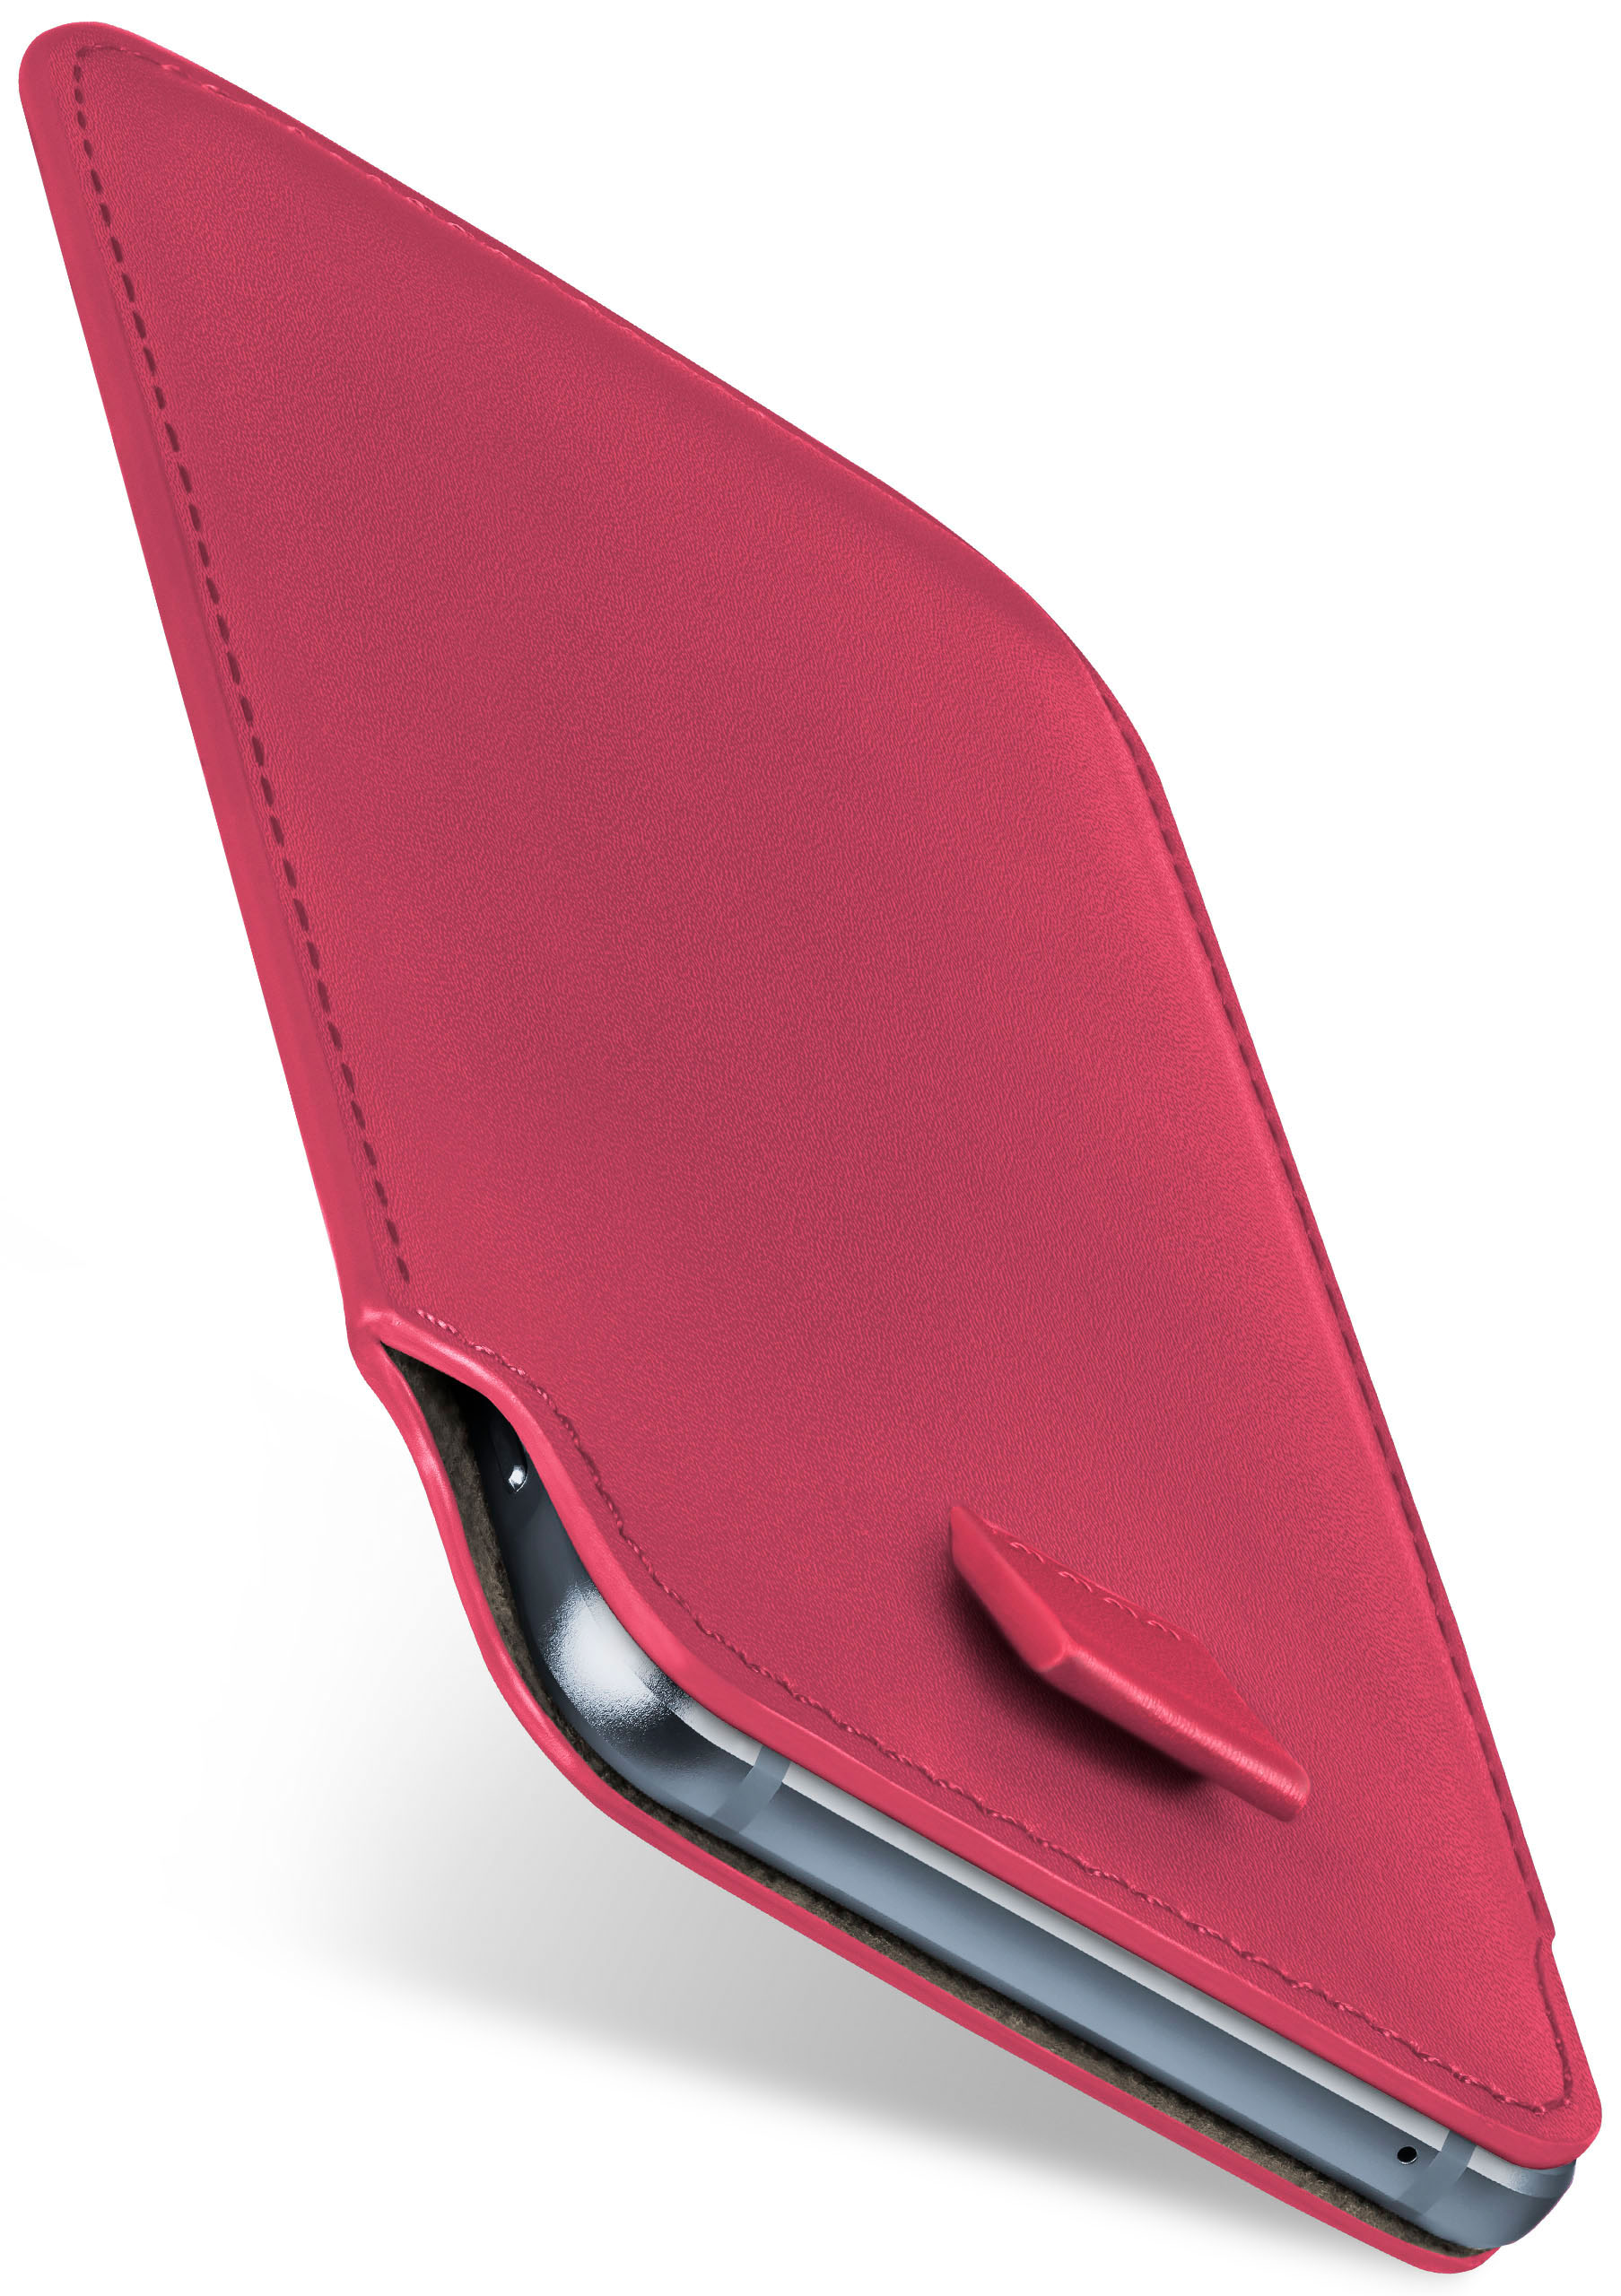 MOEX Slide Case, Cover, K10 LG, Berry-Fuchsia (2017), Full